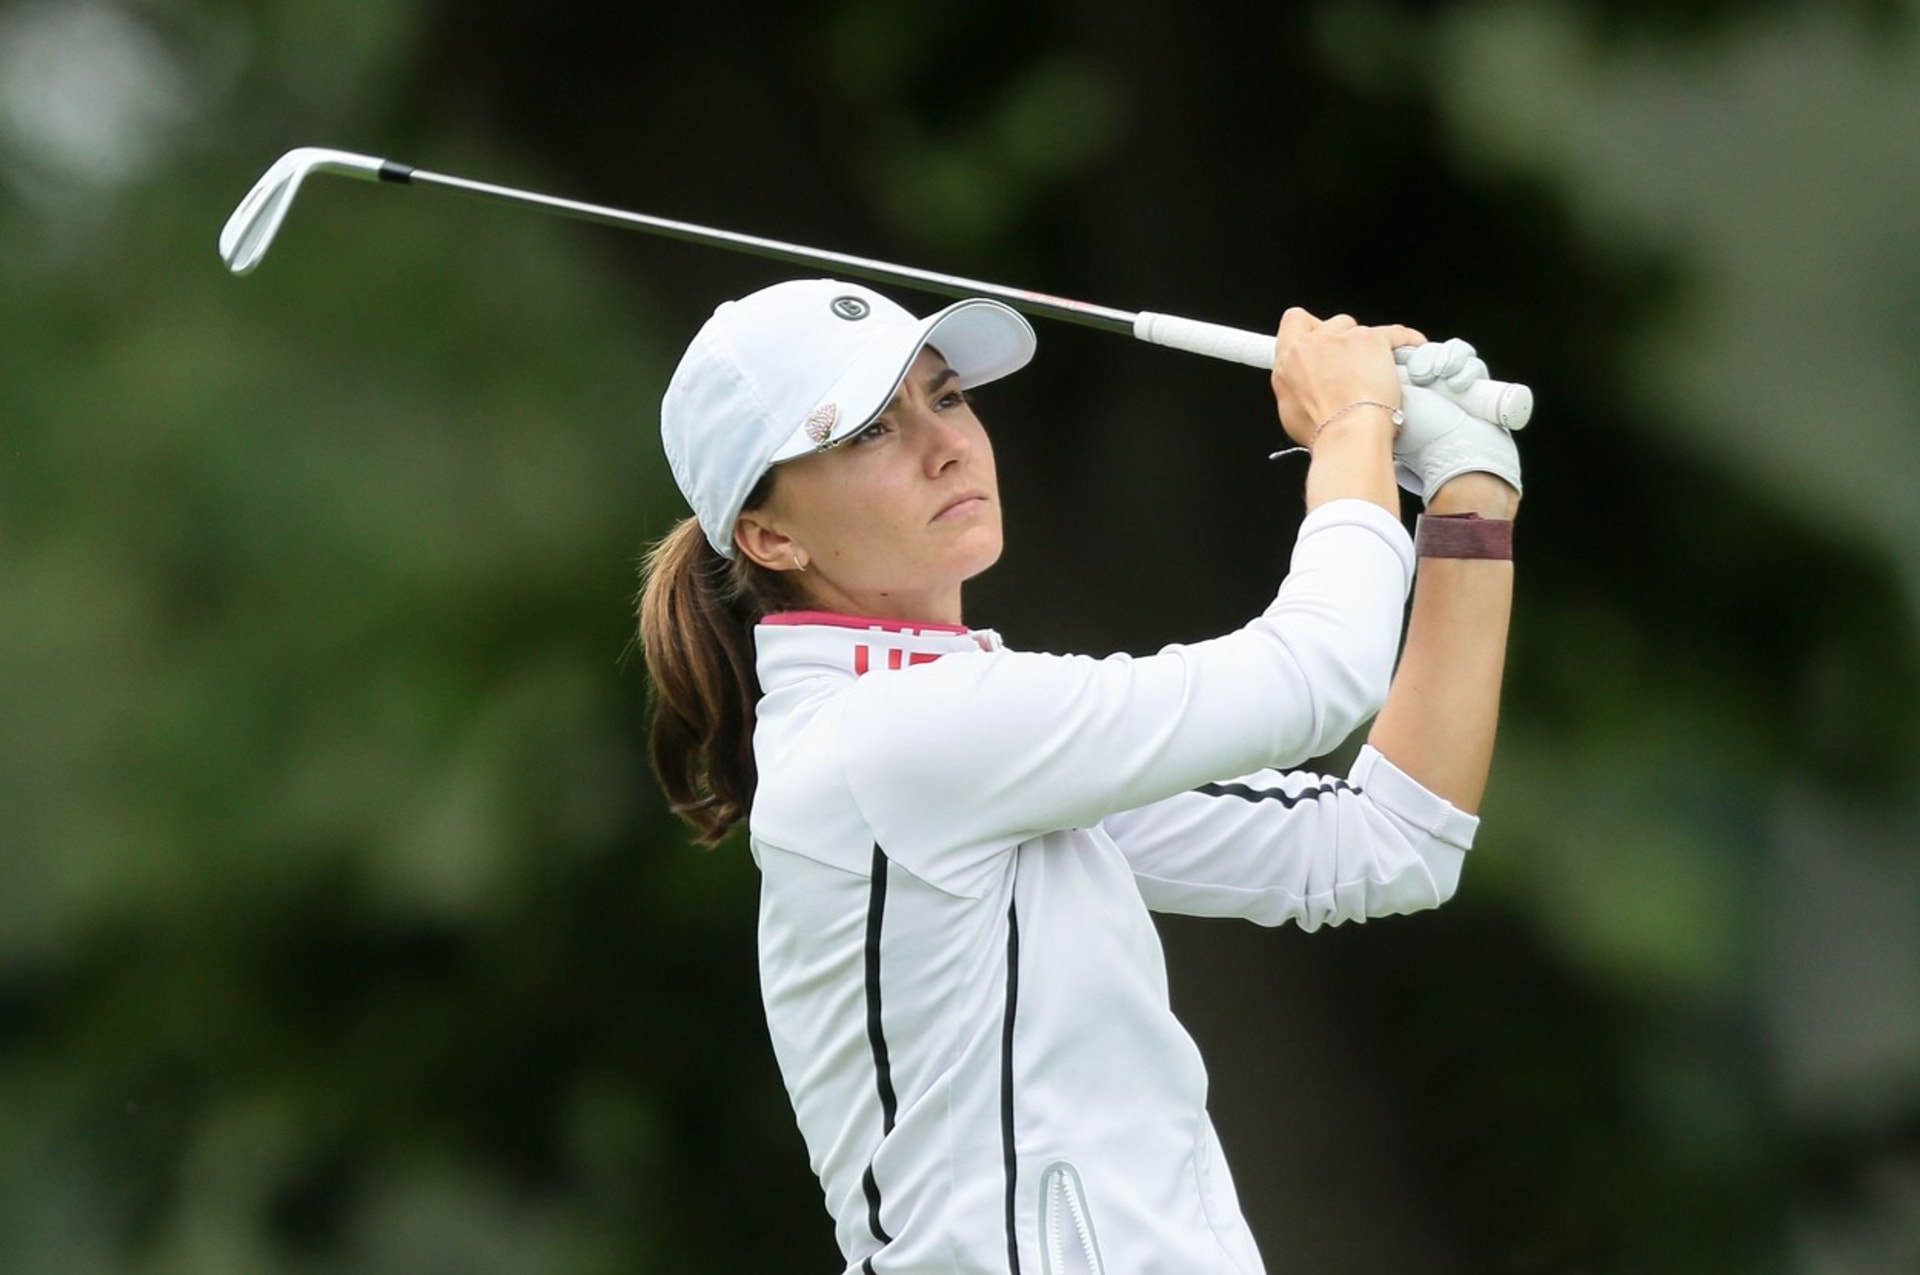 Spilková se v roce 2016 zapsala do historie jako první česká golfistka na olympiádě.